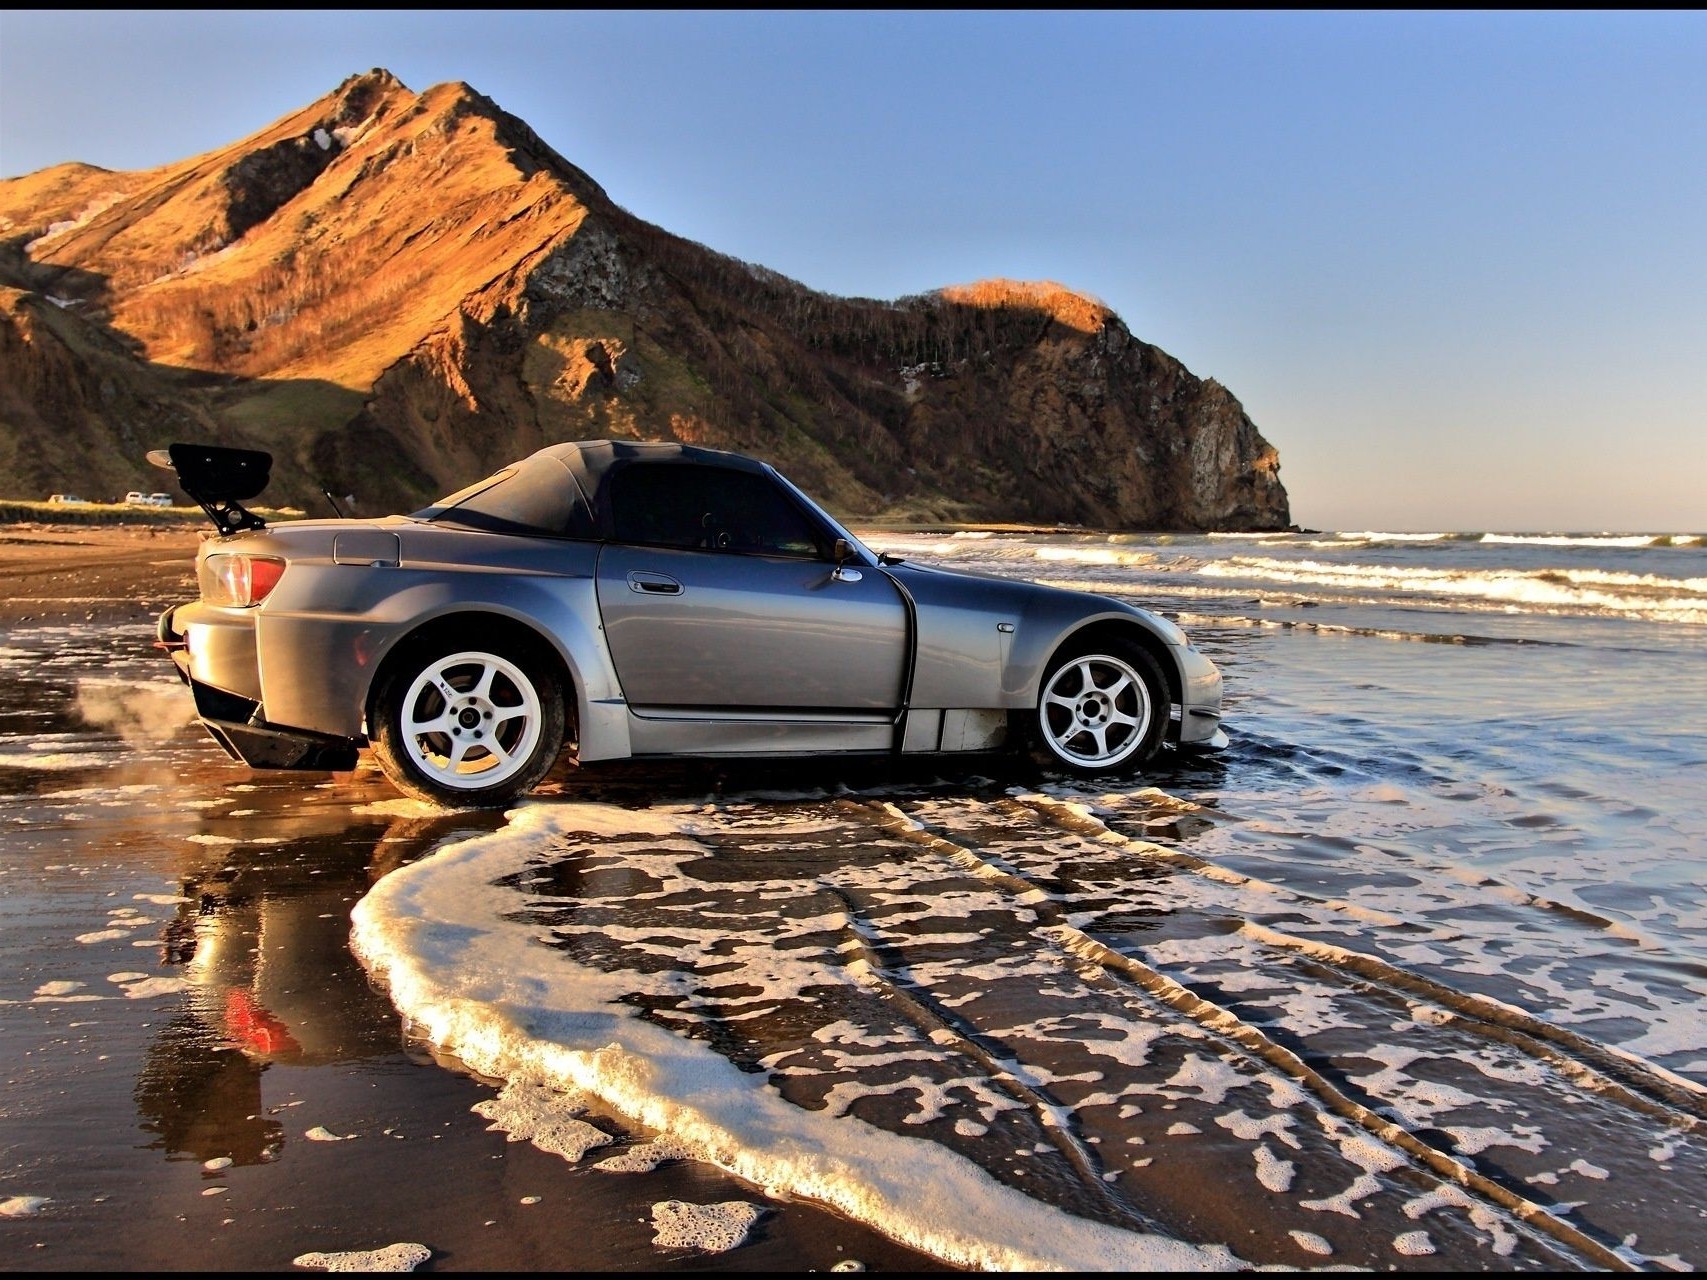 спортивные автомобили пляж воды море океан путешествия закат природа автомобиль песок пейзаж моря небо